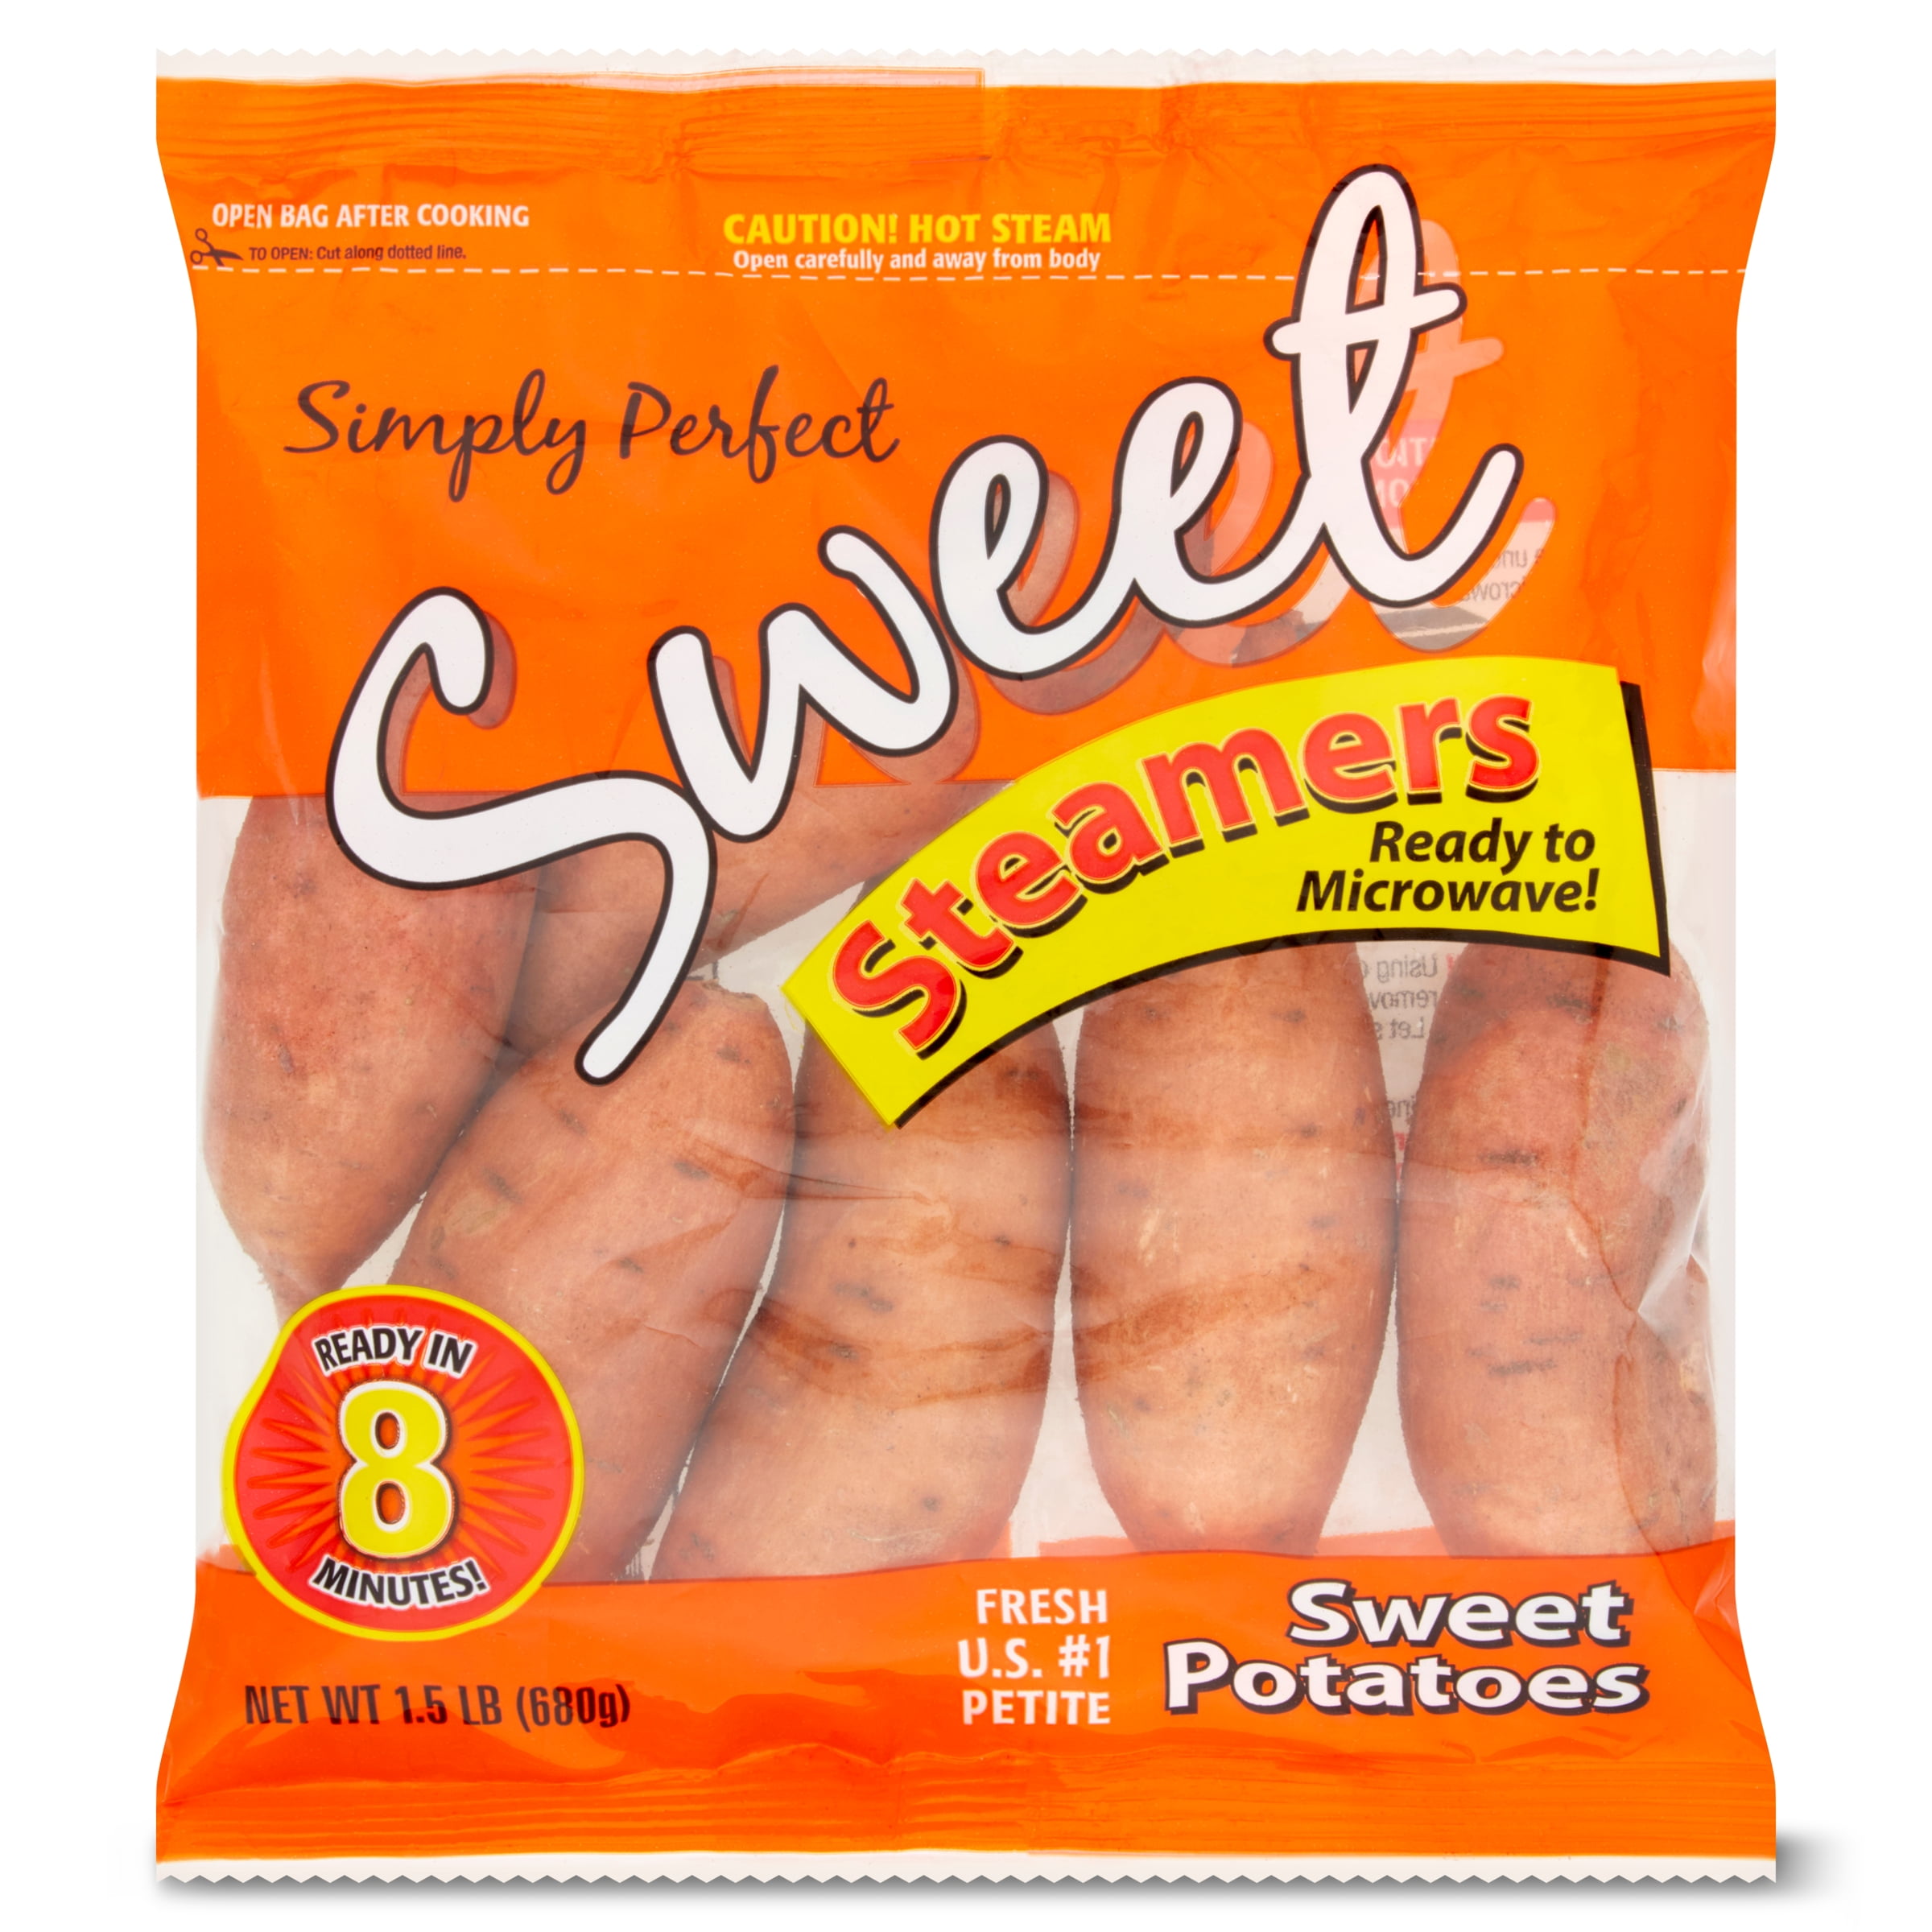 Steamables Sweet Potatoes Whole Fresh, 1.5 lb Bag